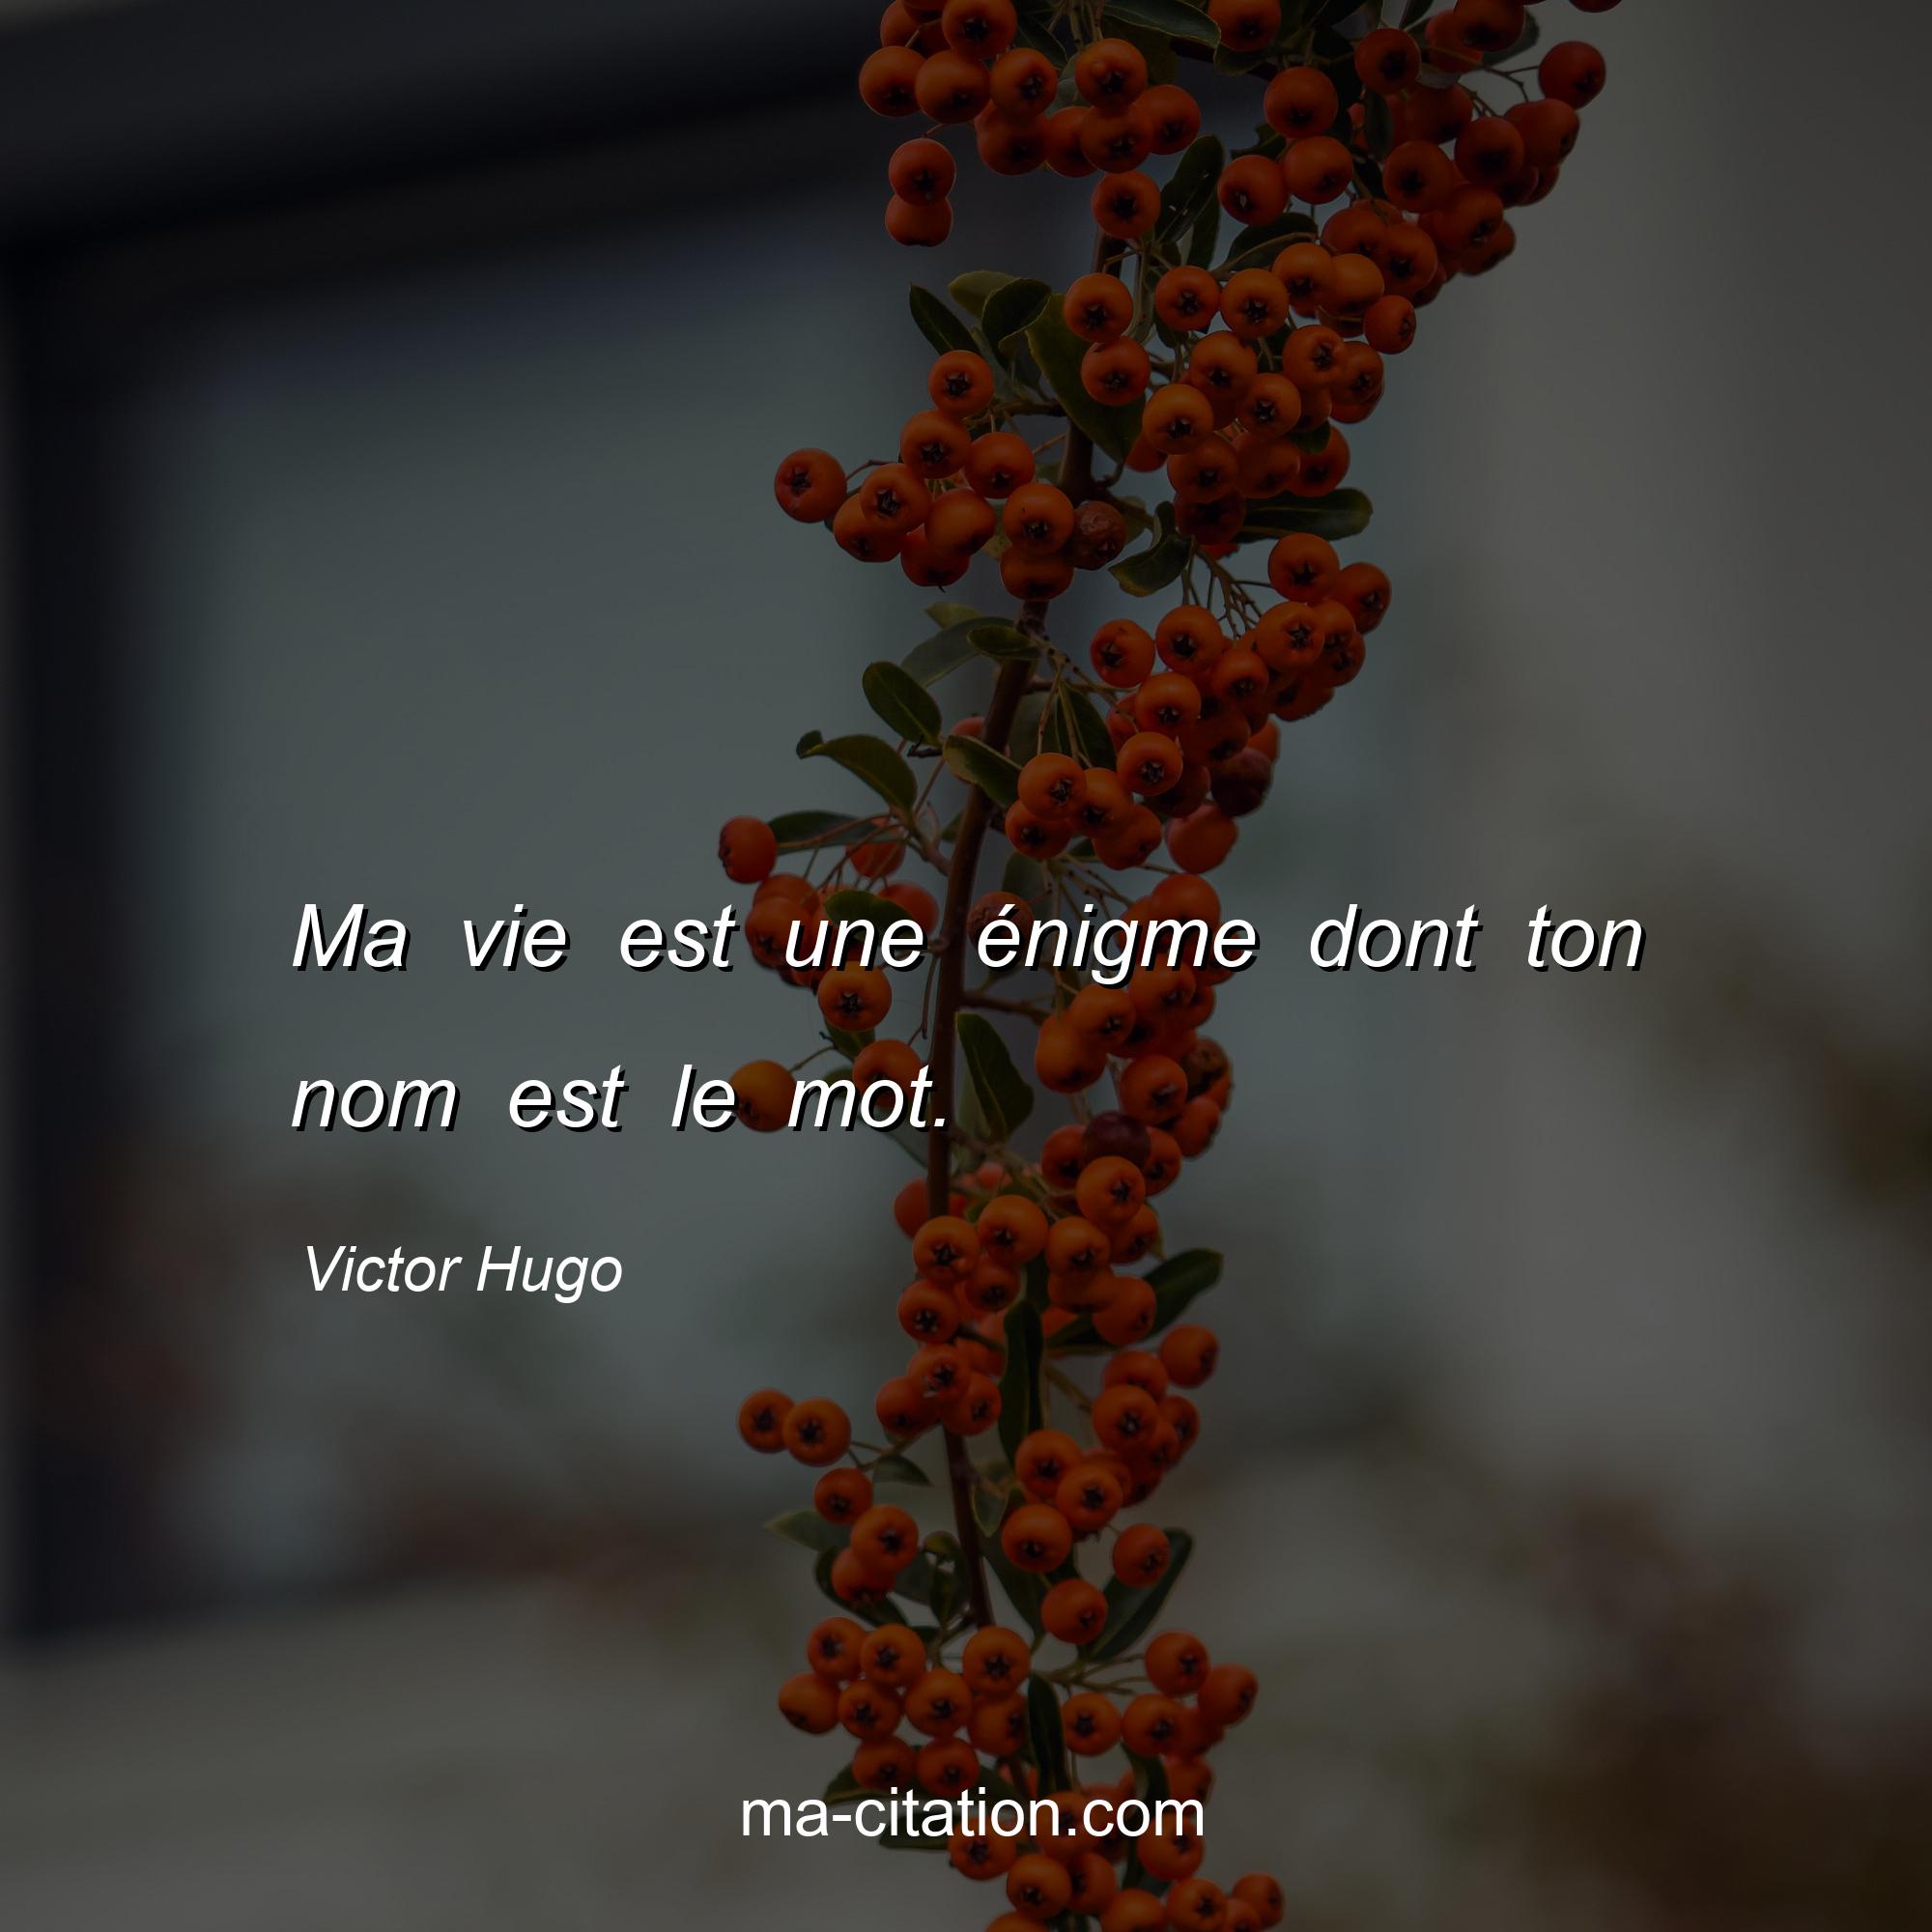 Victor Hugo : Ma vie est une énigme dont ton nom est le mot.